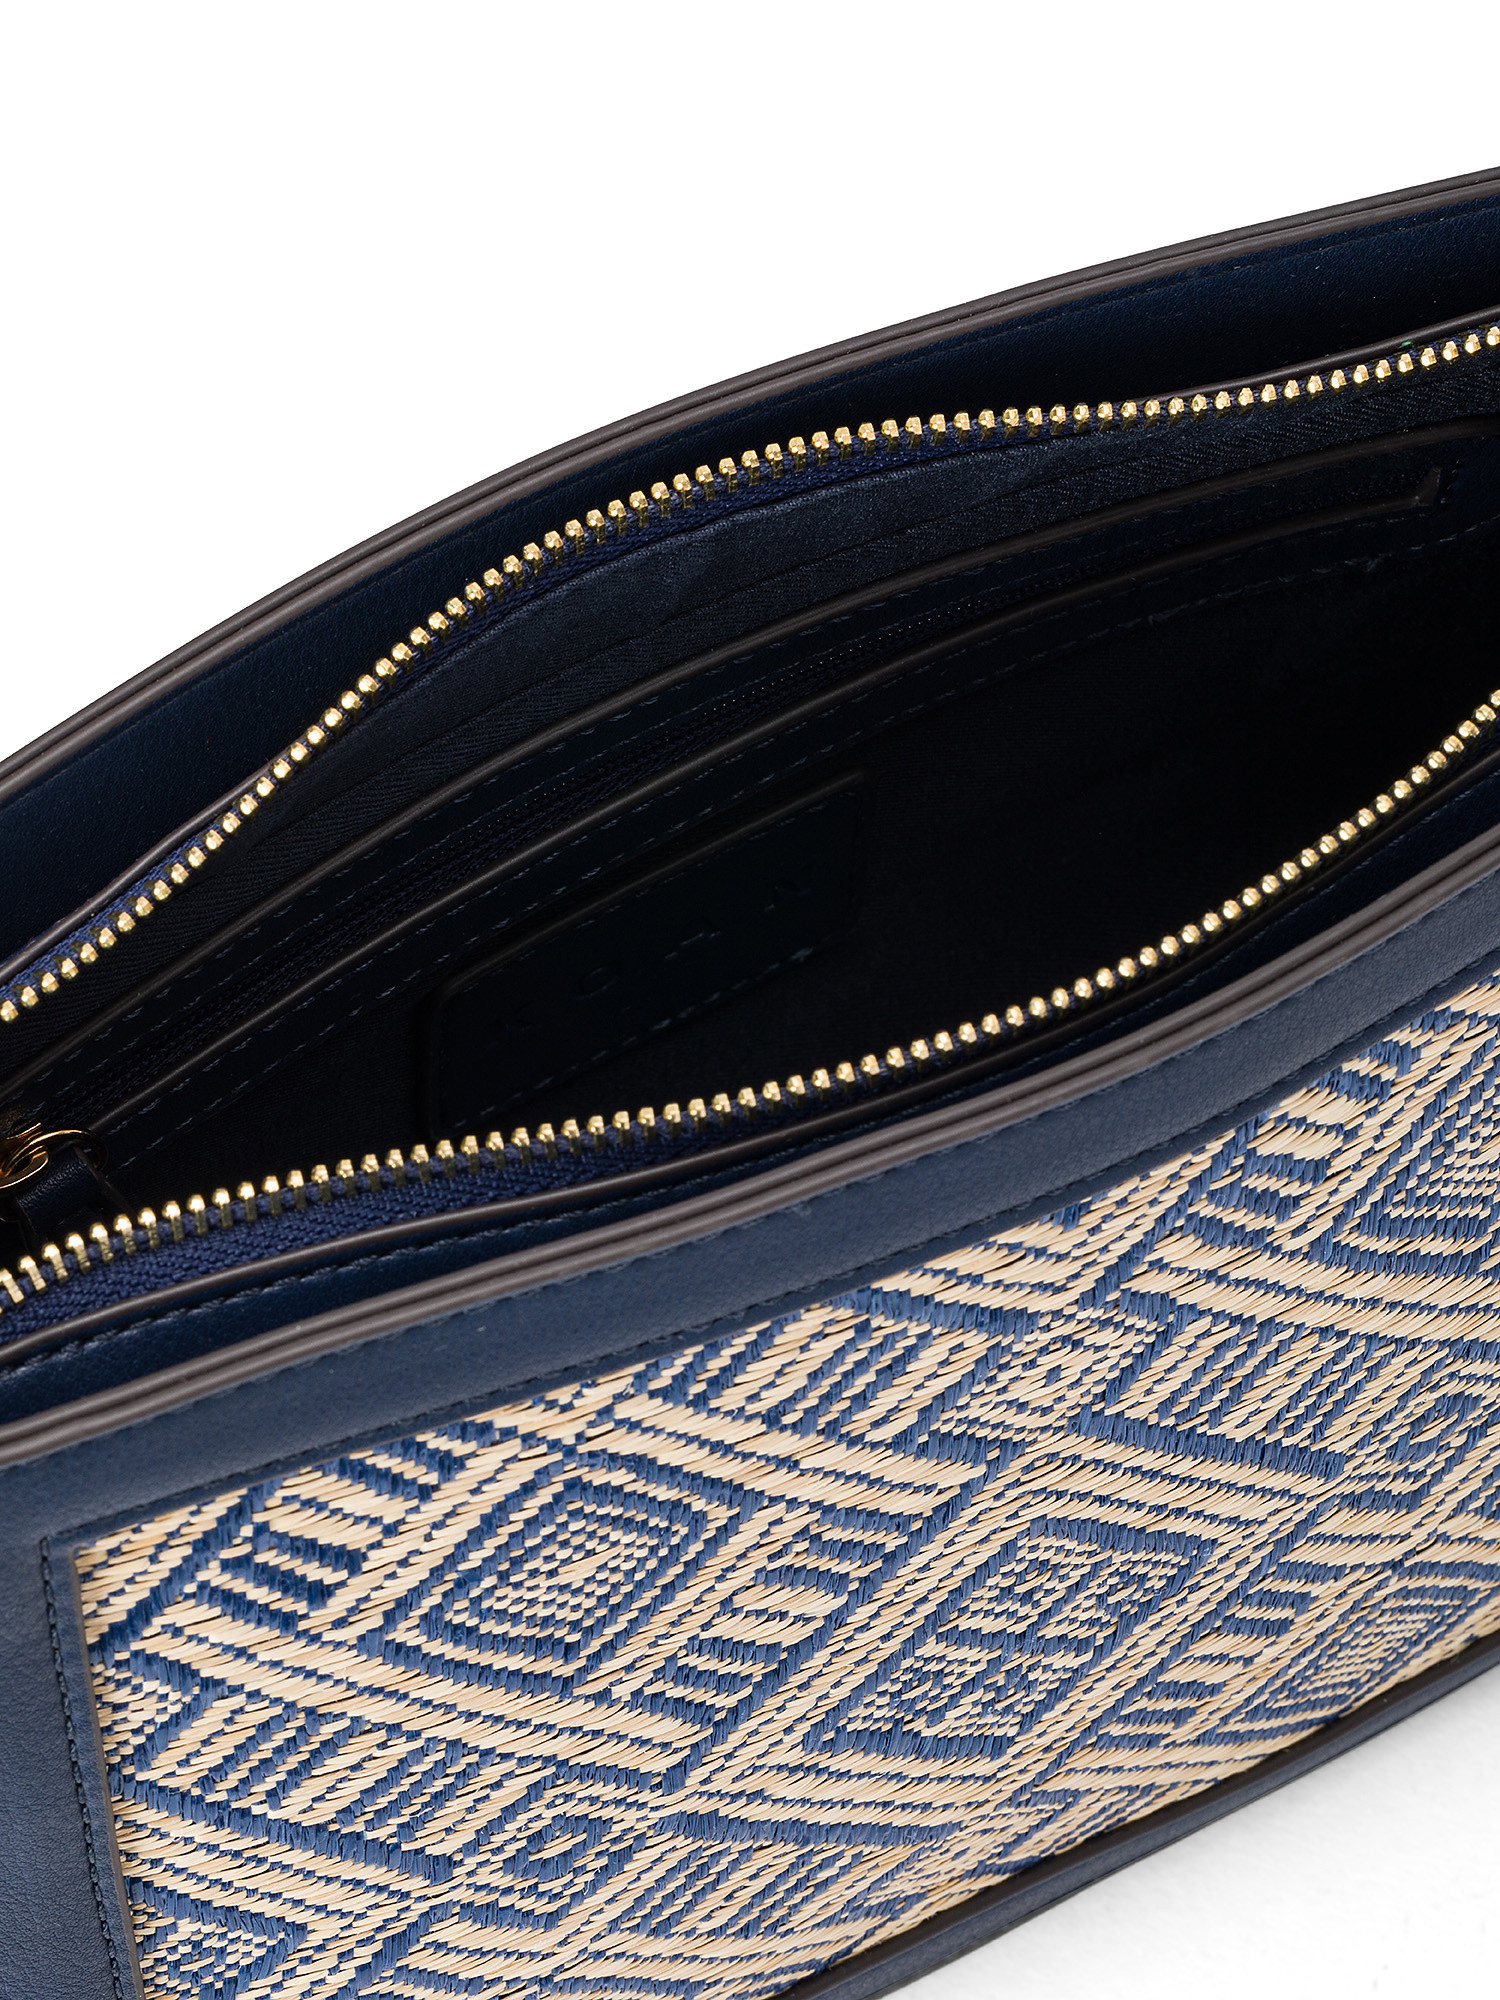 Koan - Shoulder bag with insert, Blue, large image number 2